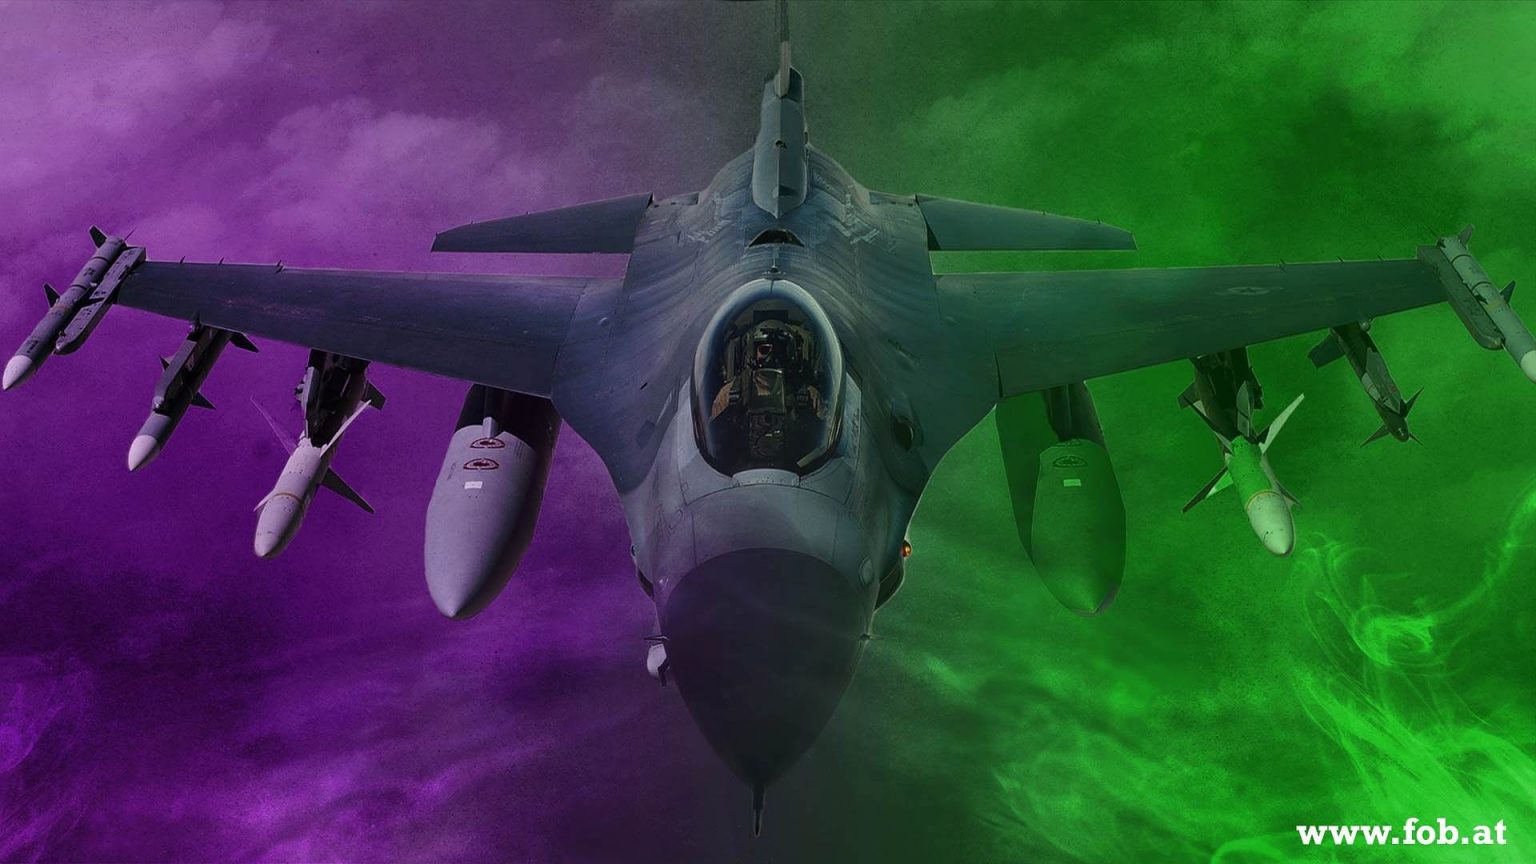 Sujetbild Kampfflugzeug - WikiImages - Pixabay